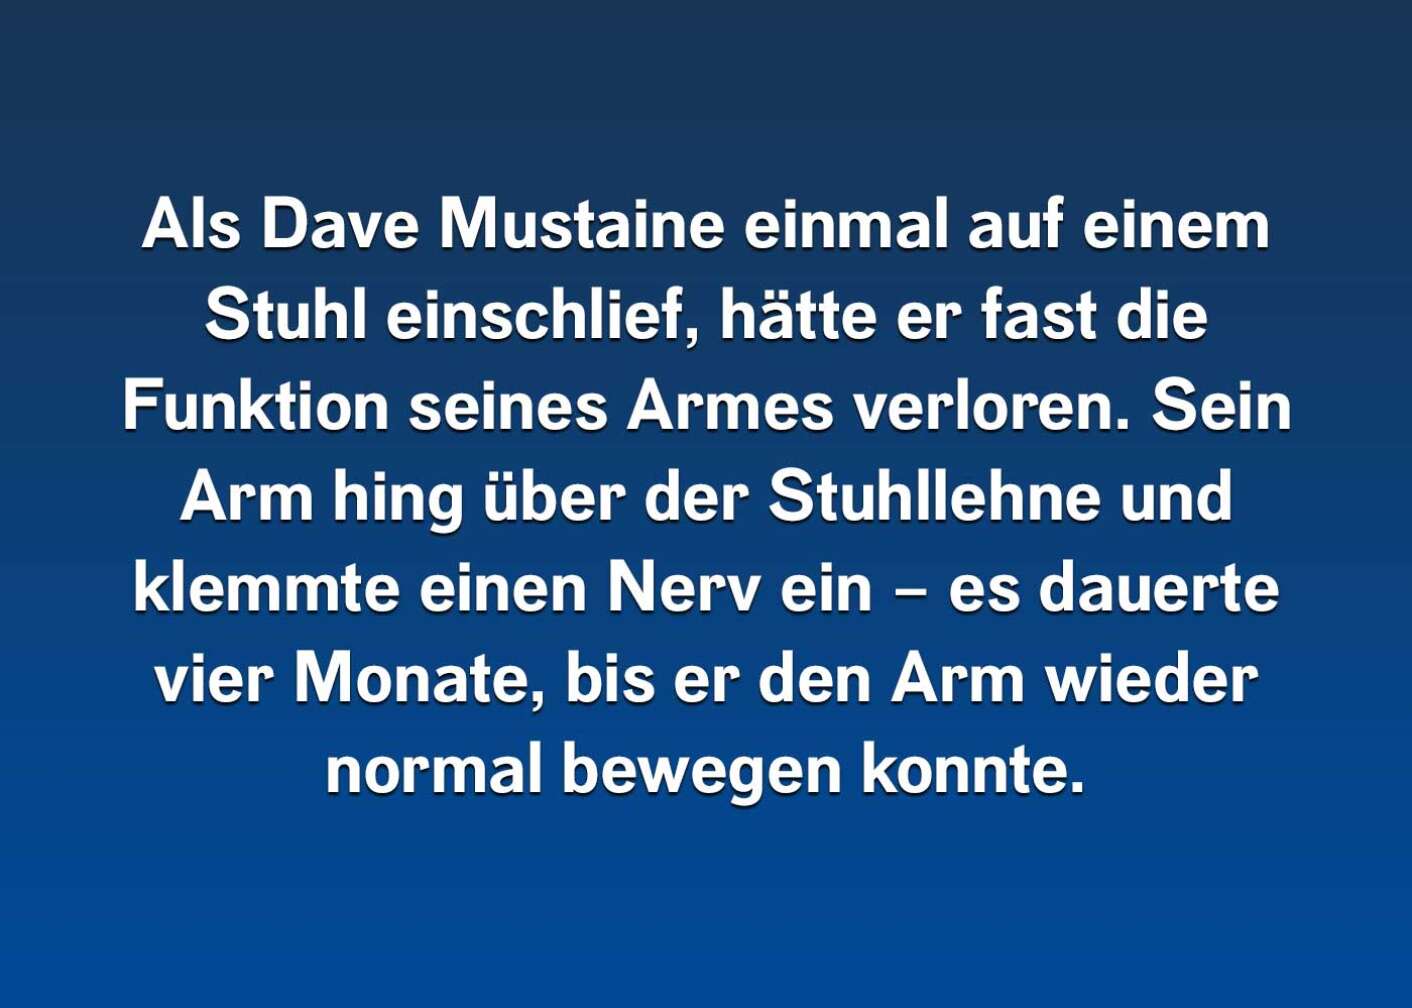 Fakten über Dave Mustaine